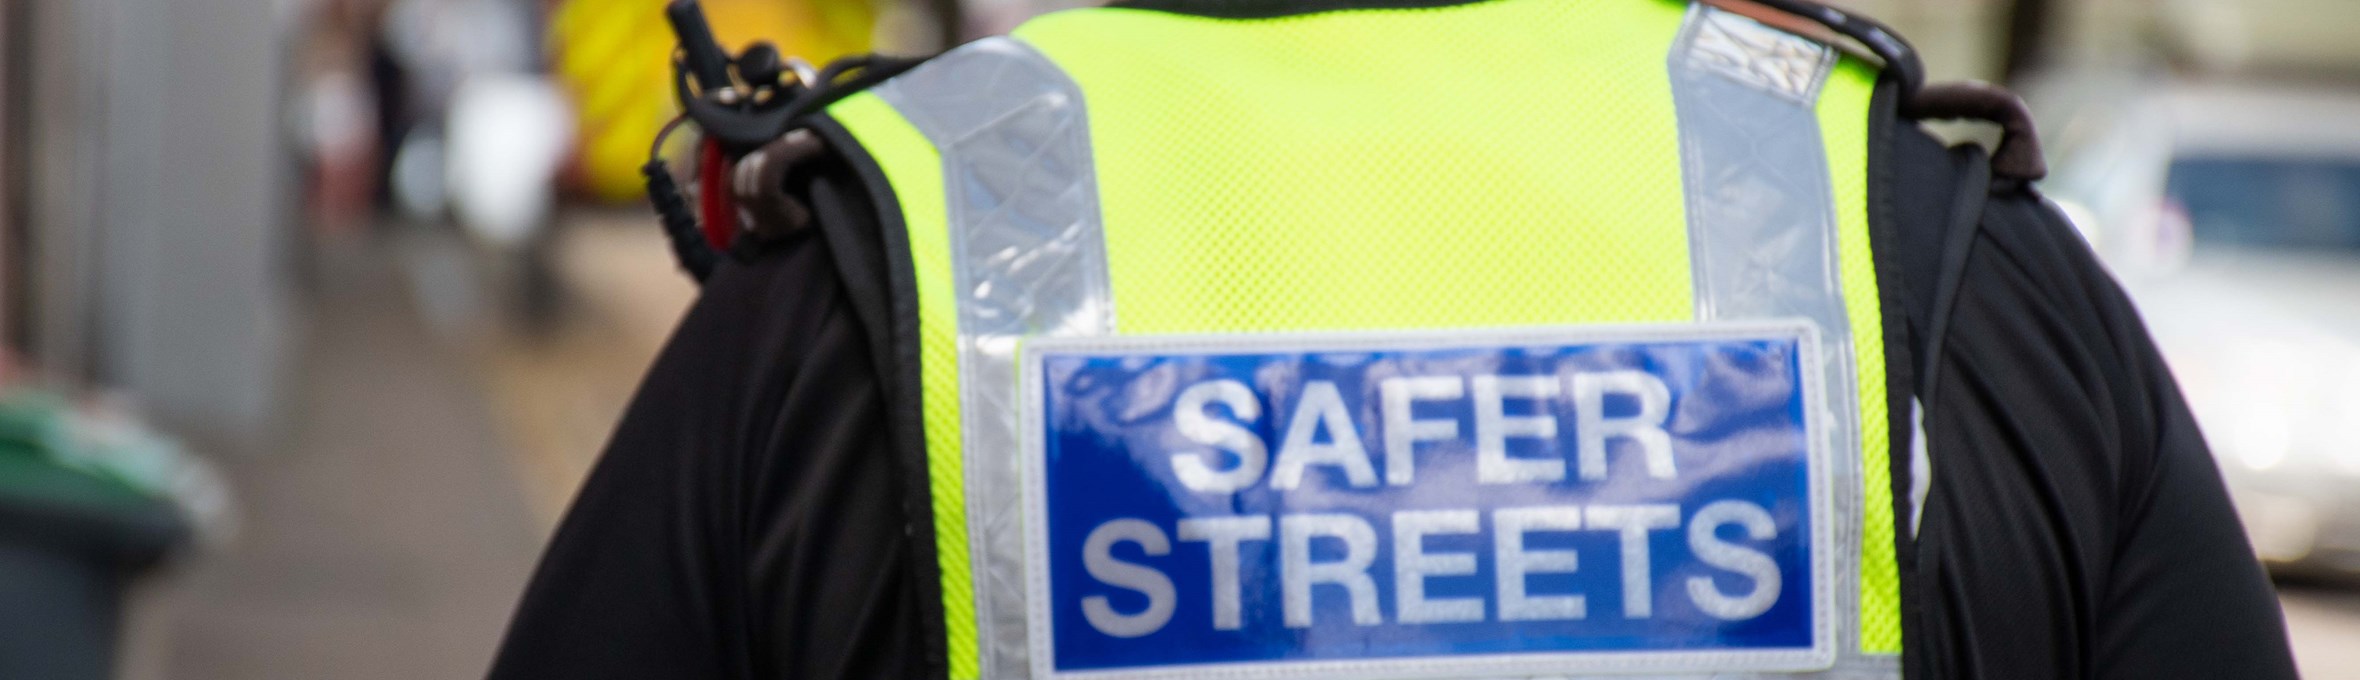 Police officer walking a street with hi viz vest with safer streets badge 